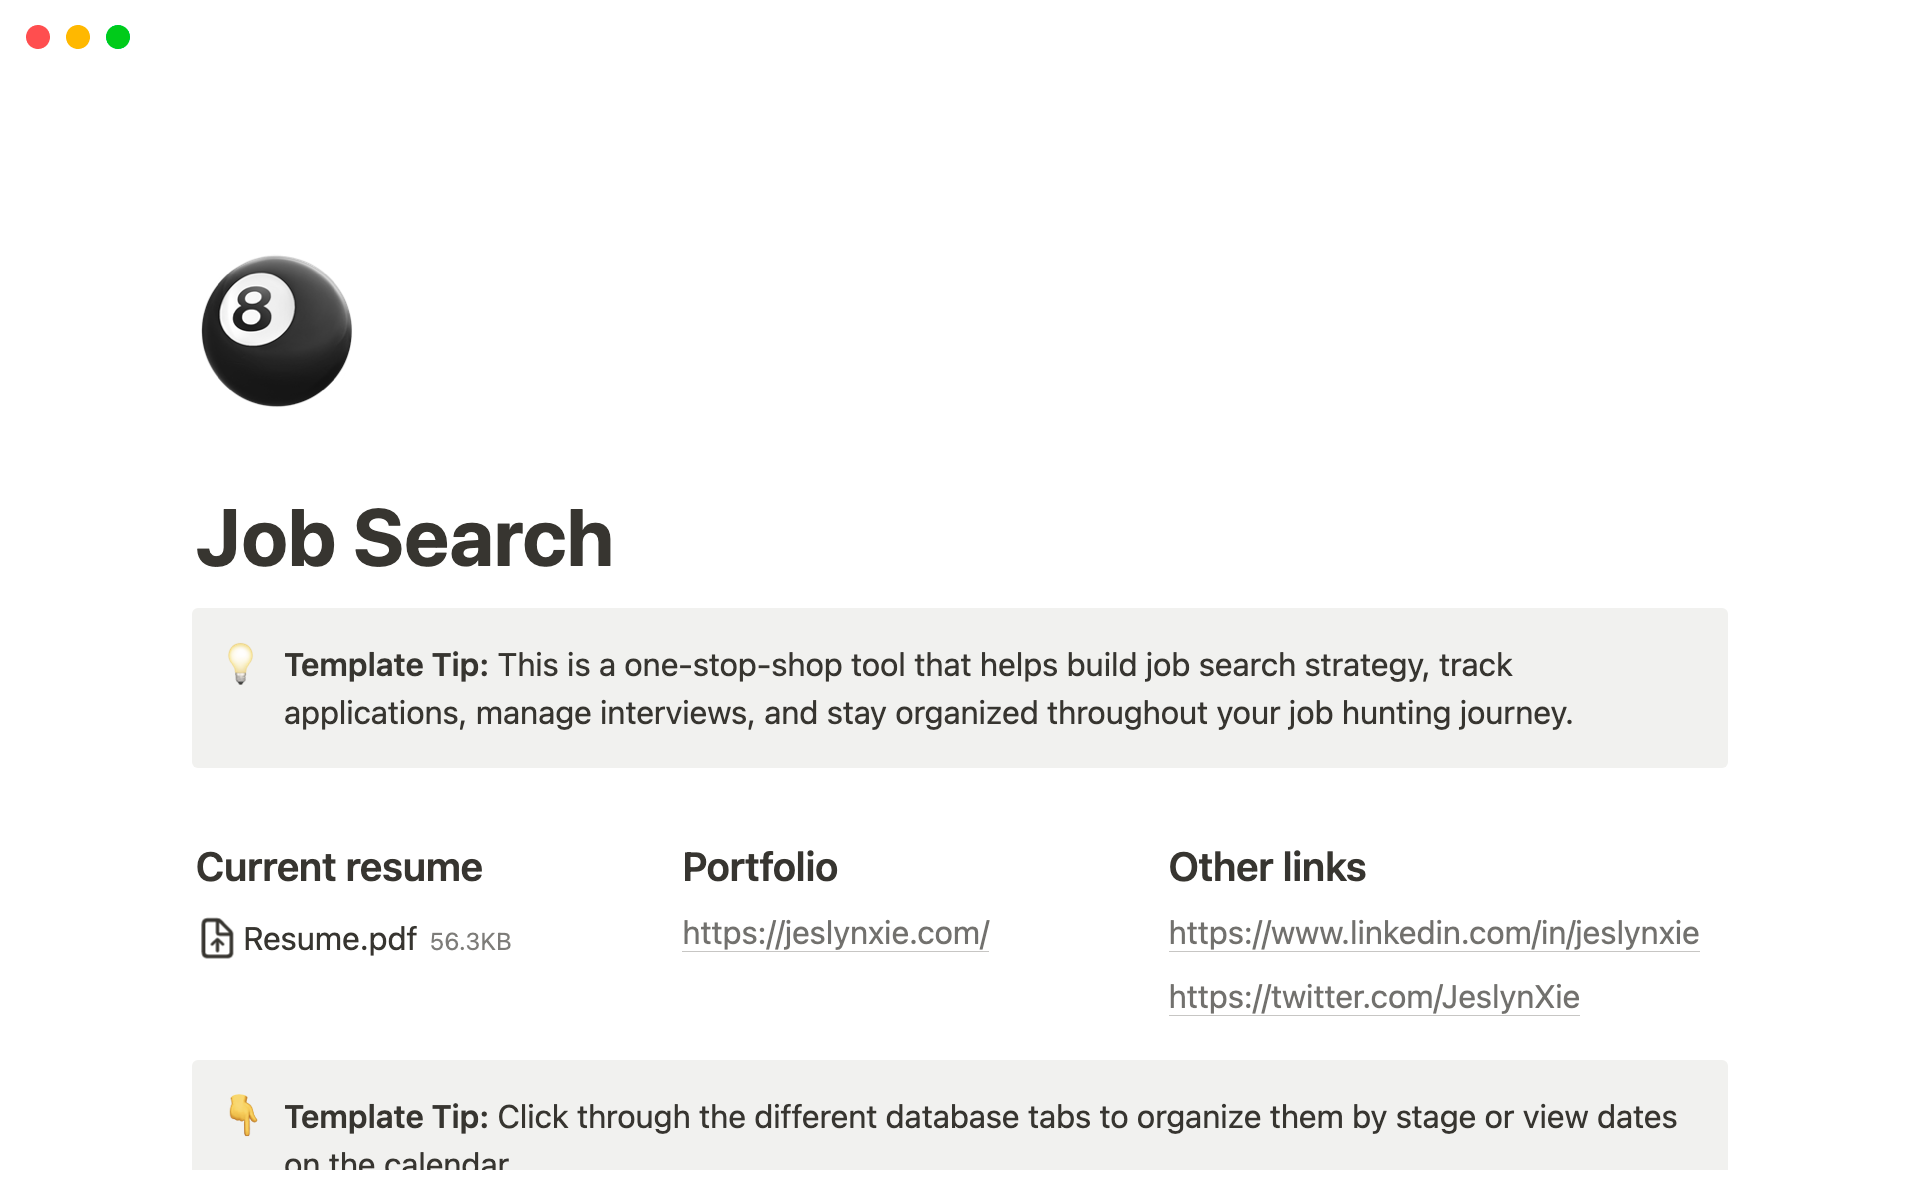 Uma prévia do modelo para Job Search Toolkit